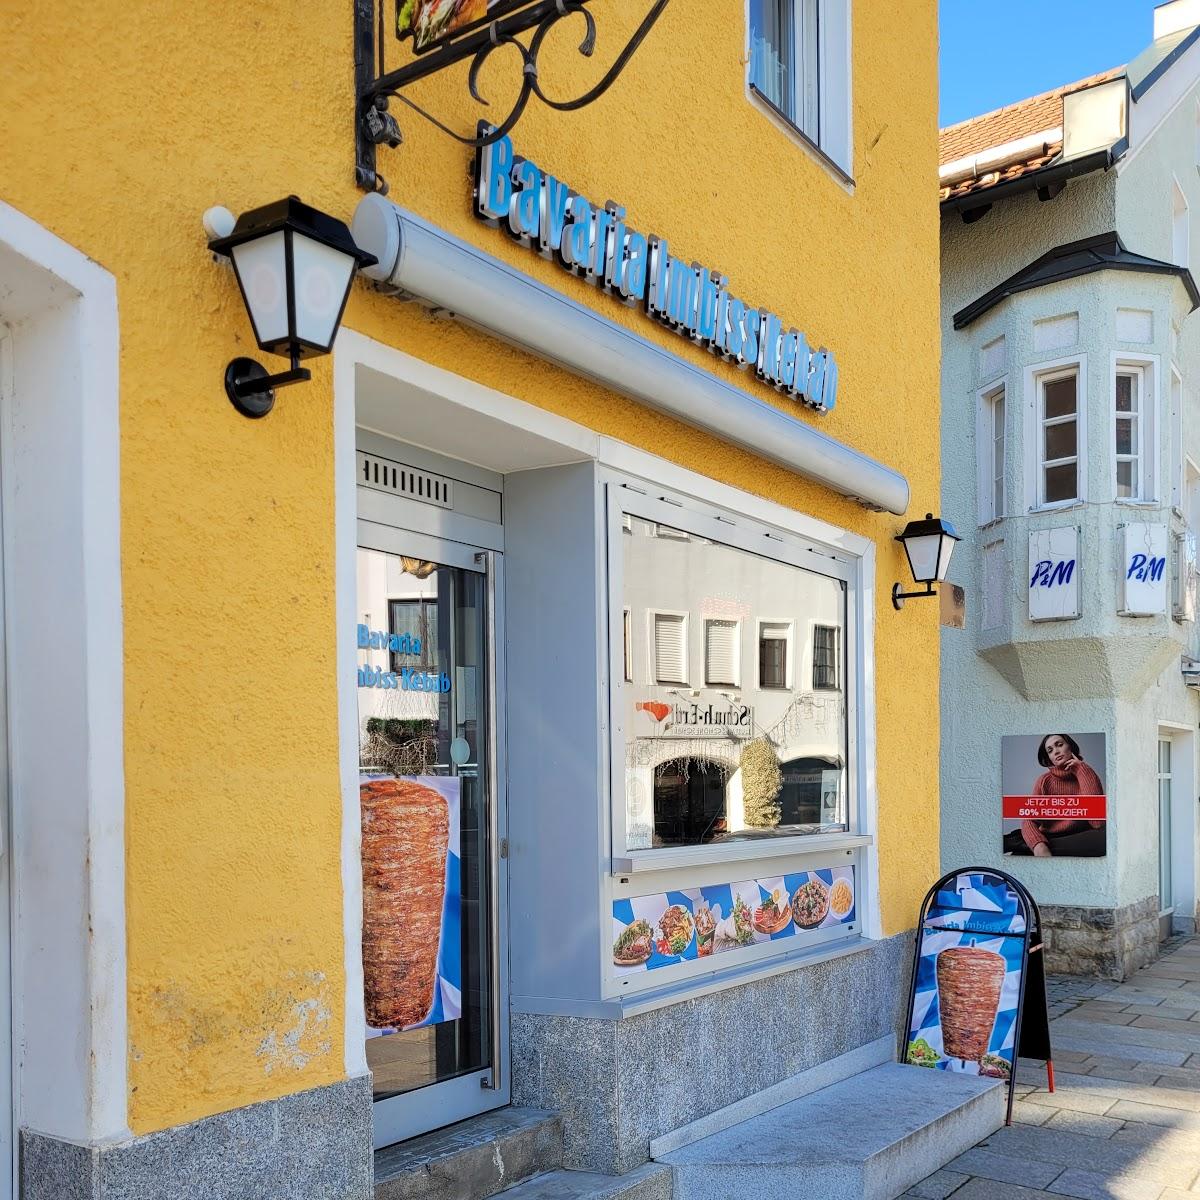 Restaurant "Bavaria Imbiss Kebab" in Waldkirchen